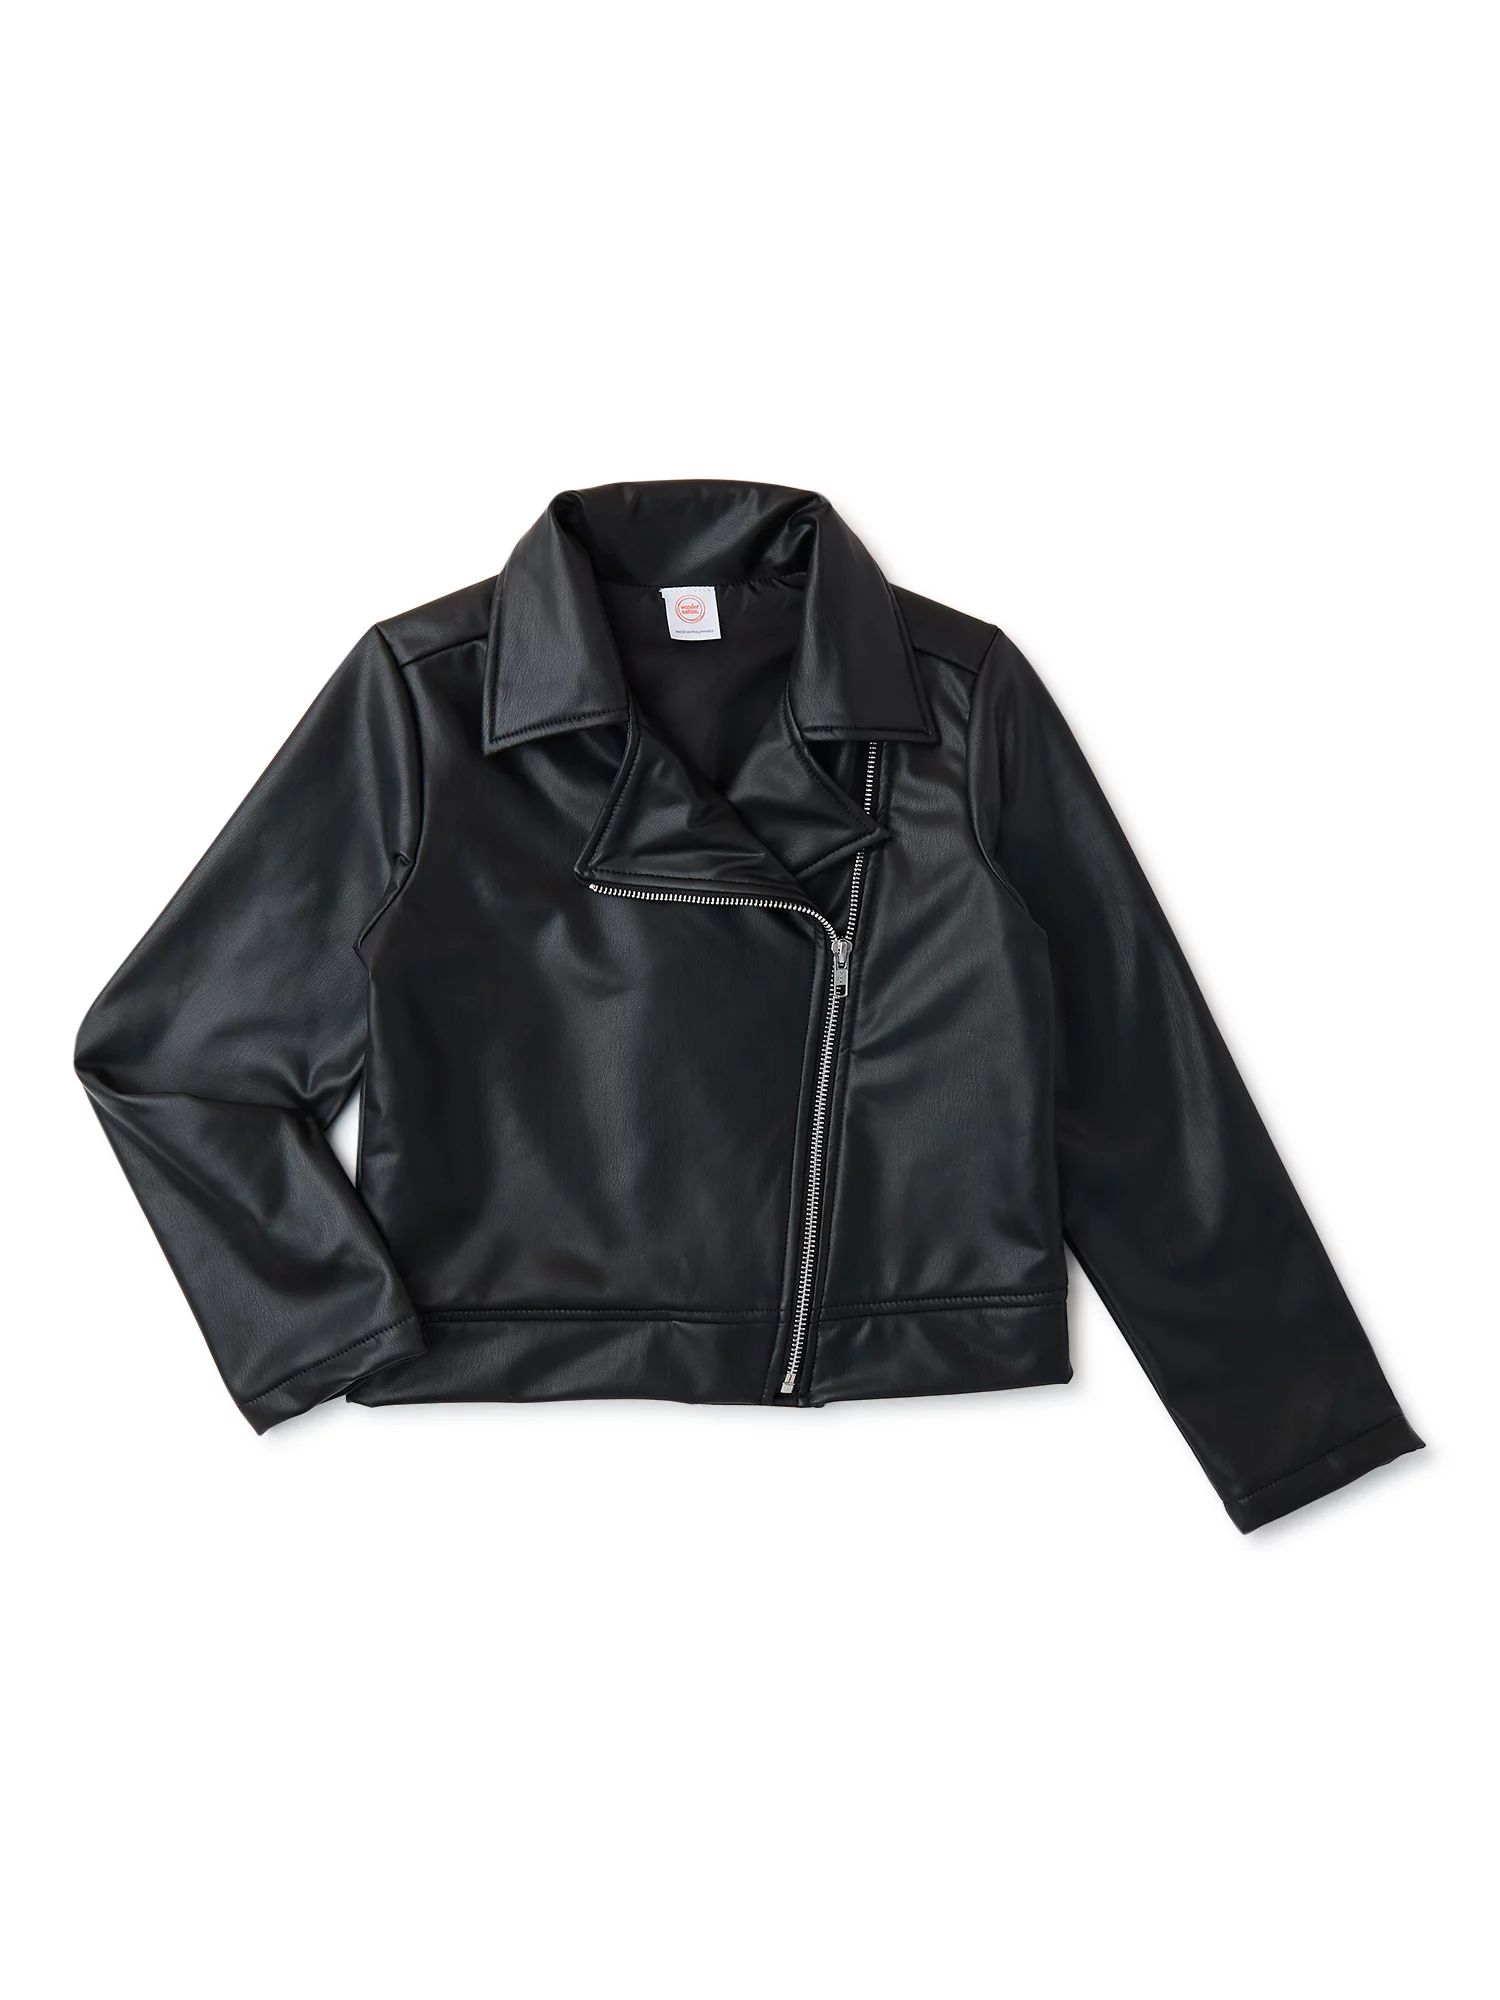 Wonder Nation Girls Long Sleeve Faux Leather Moto Jacket, Sizes 4-18 & Plus | Walmart (US)